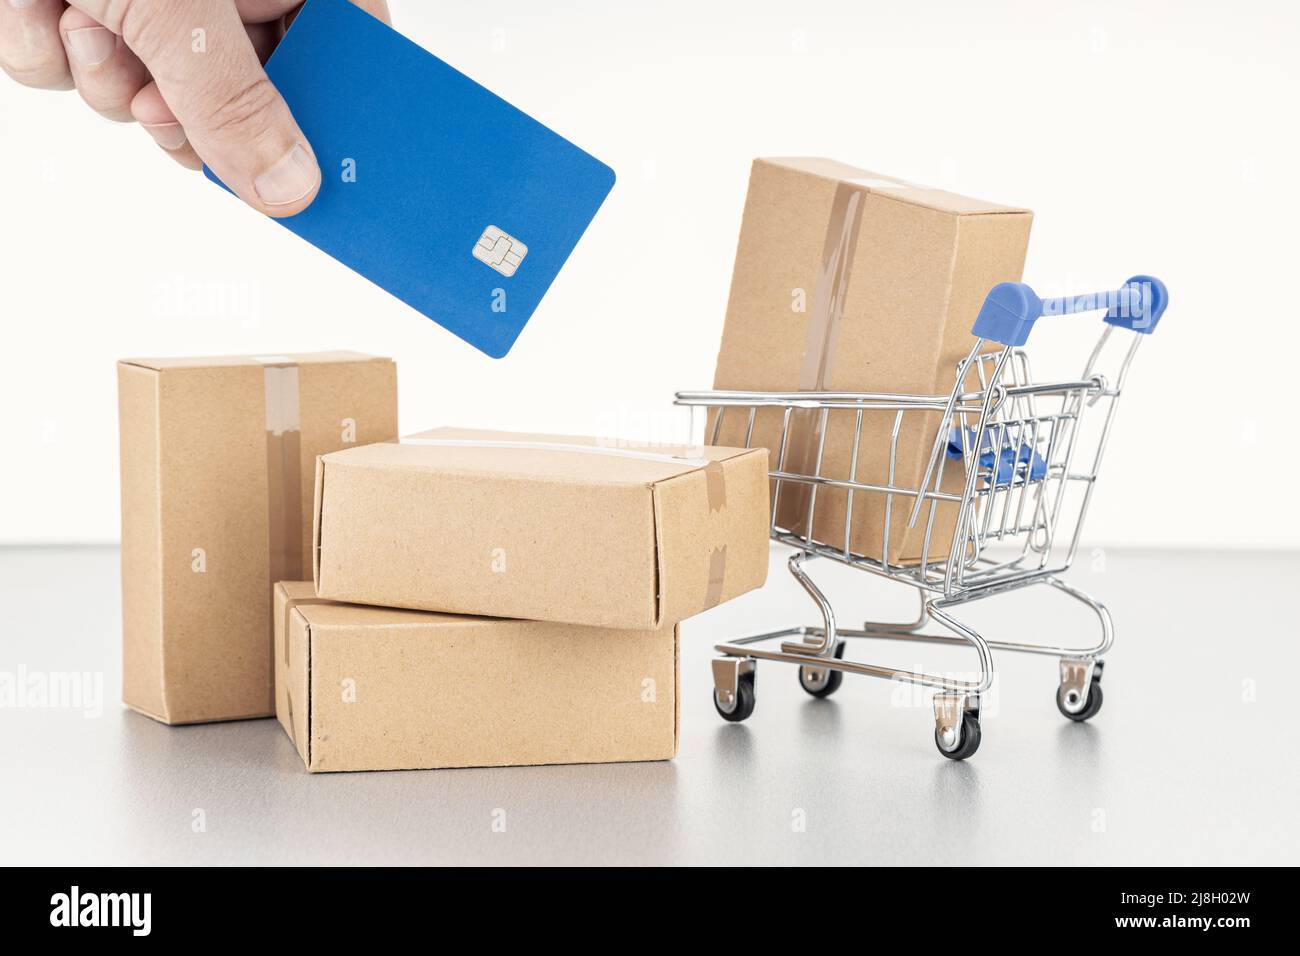 Shopping- oder Kaufkonzept mit Kreditkarte. Menschliche Hand mit Kreditkarte, leeren Kartons und Warenkorb Stockfoto